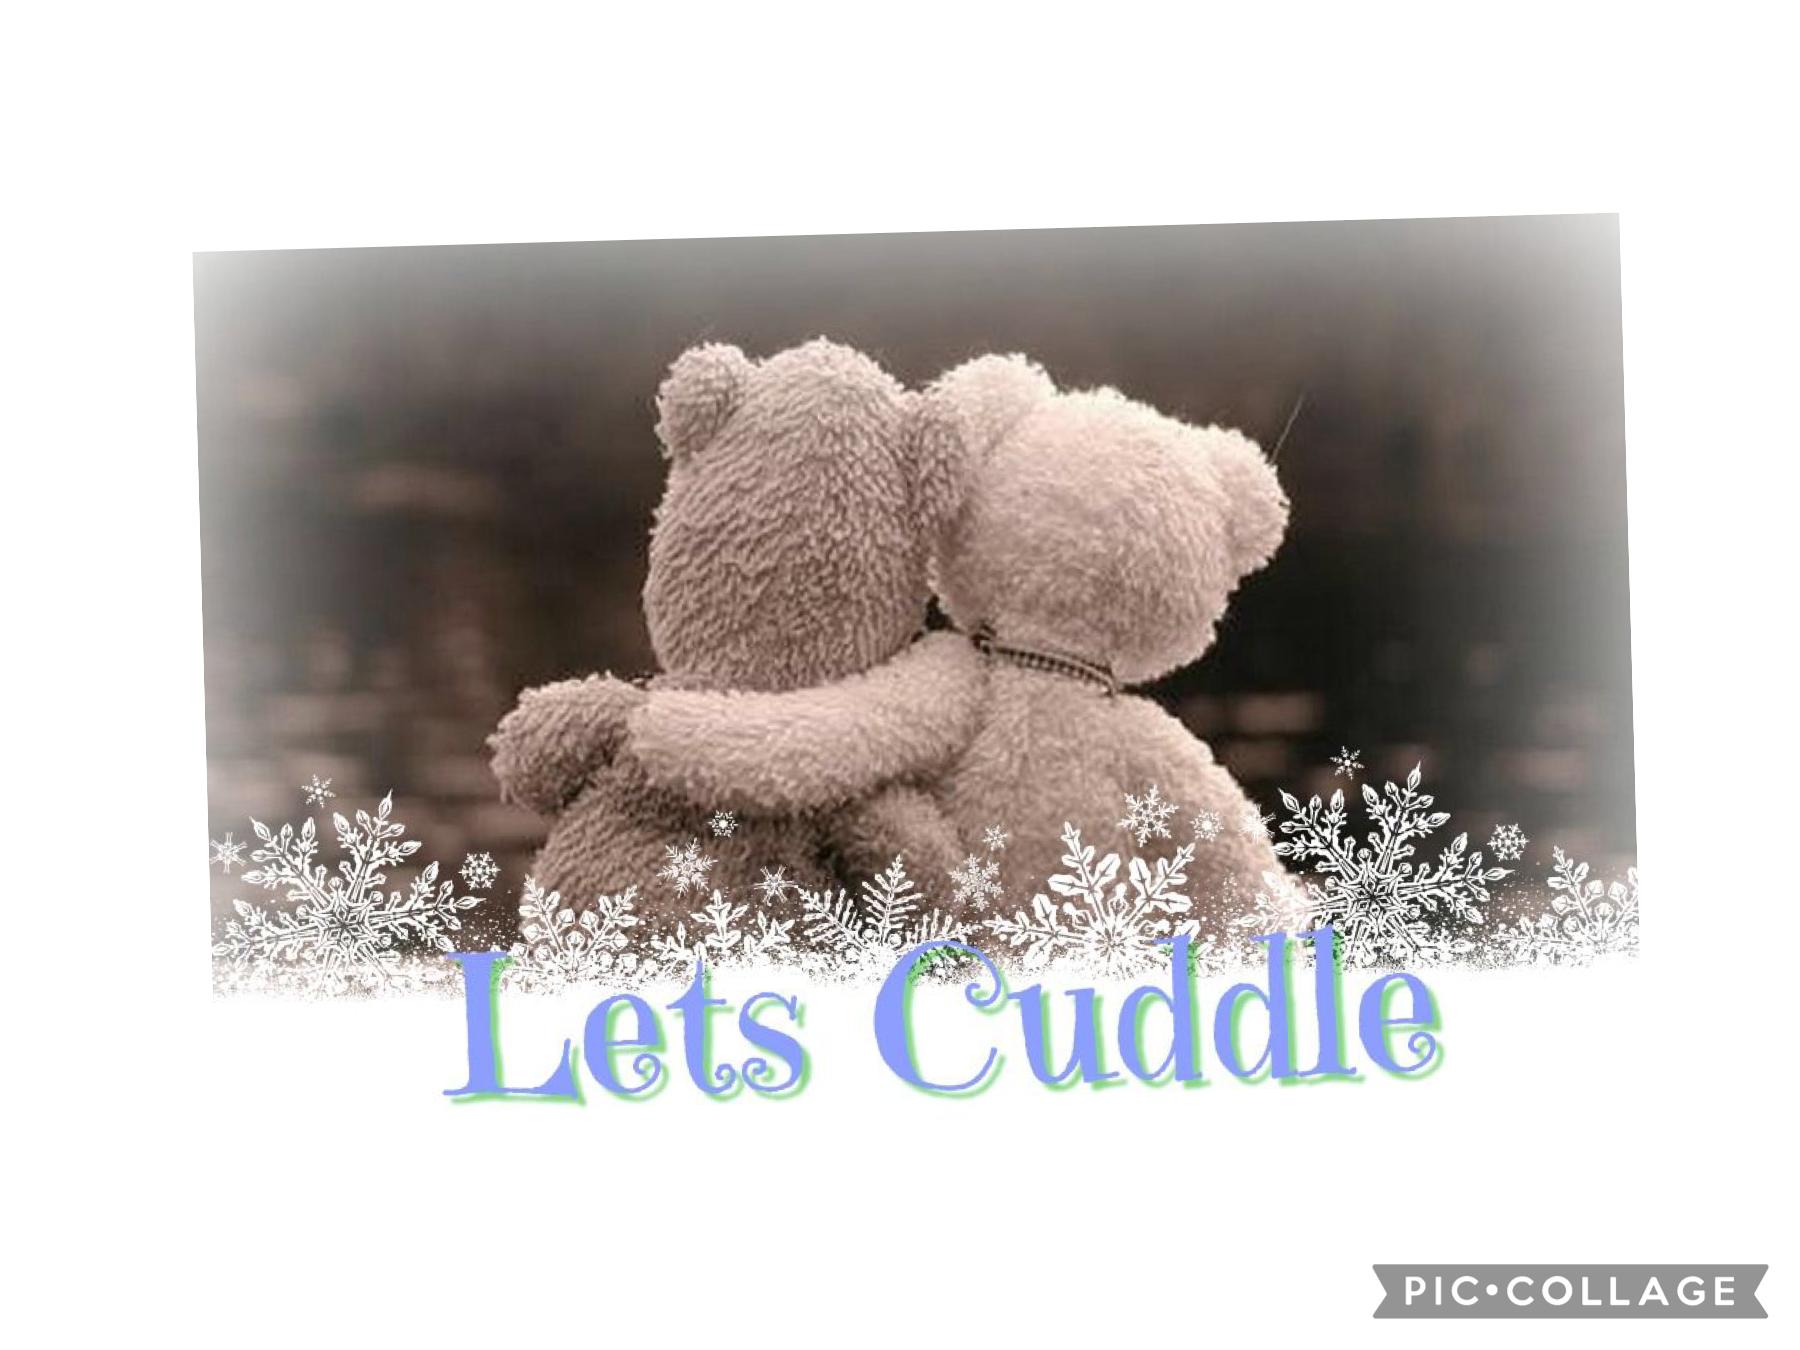 Let’s cuddle